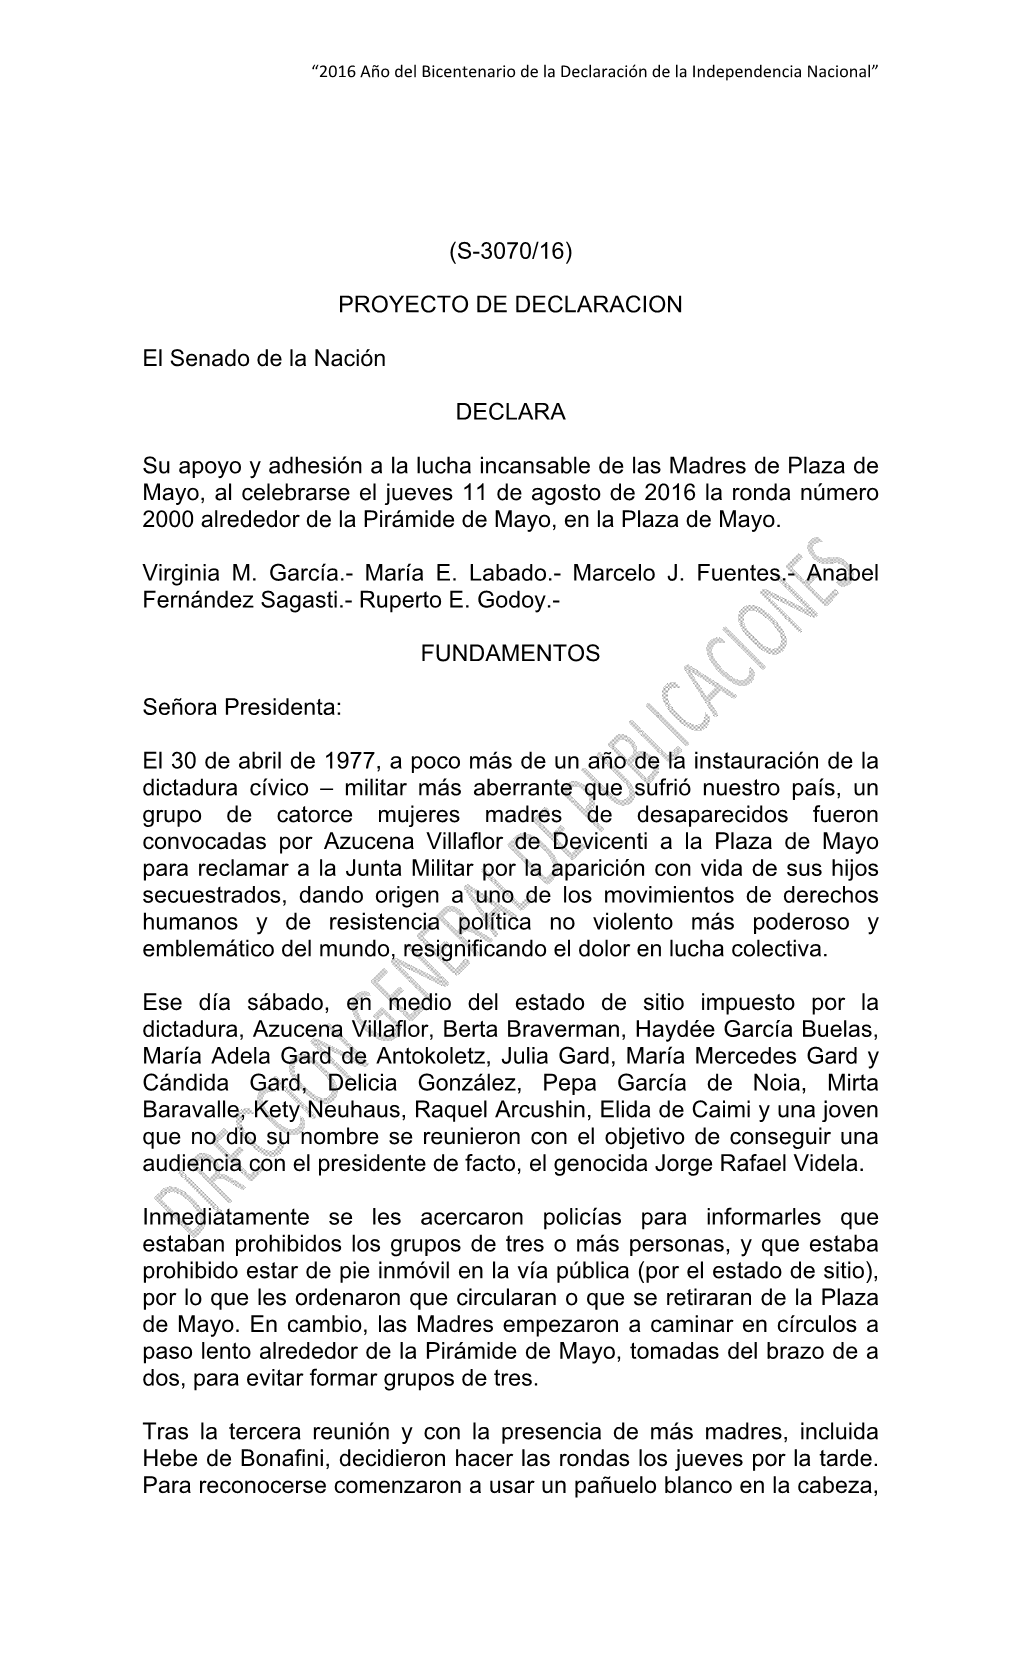 (S-3070/16) PROYECTO DE DECLARACION El Senado De La